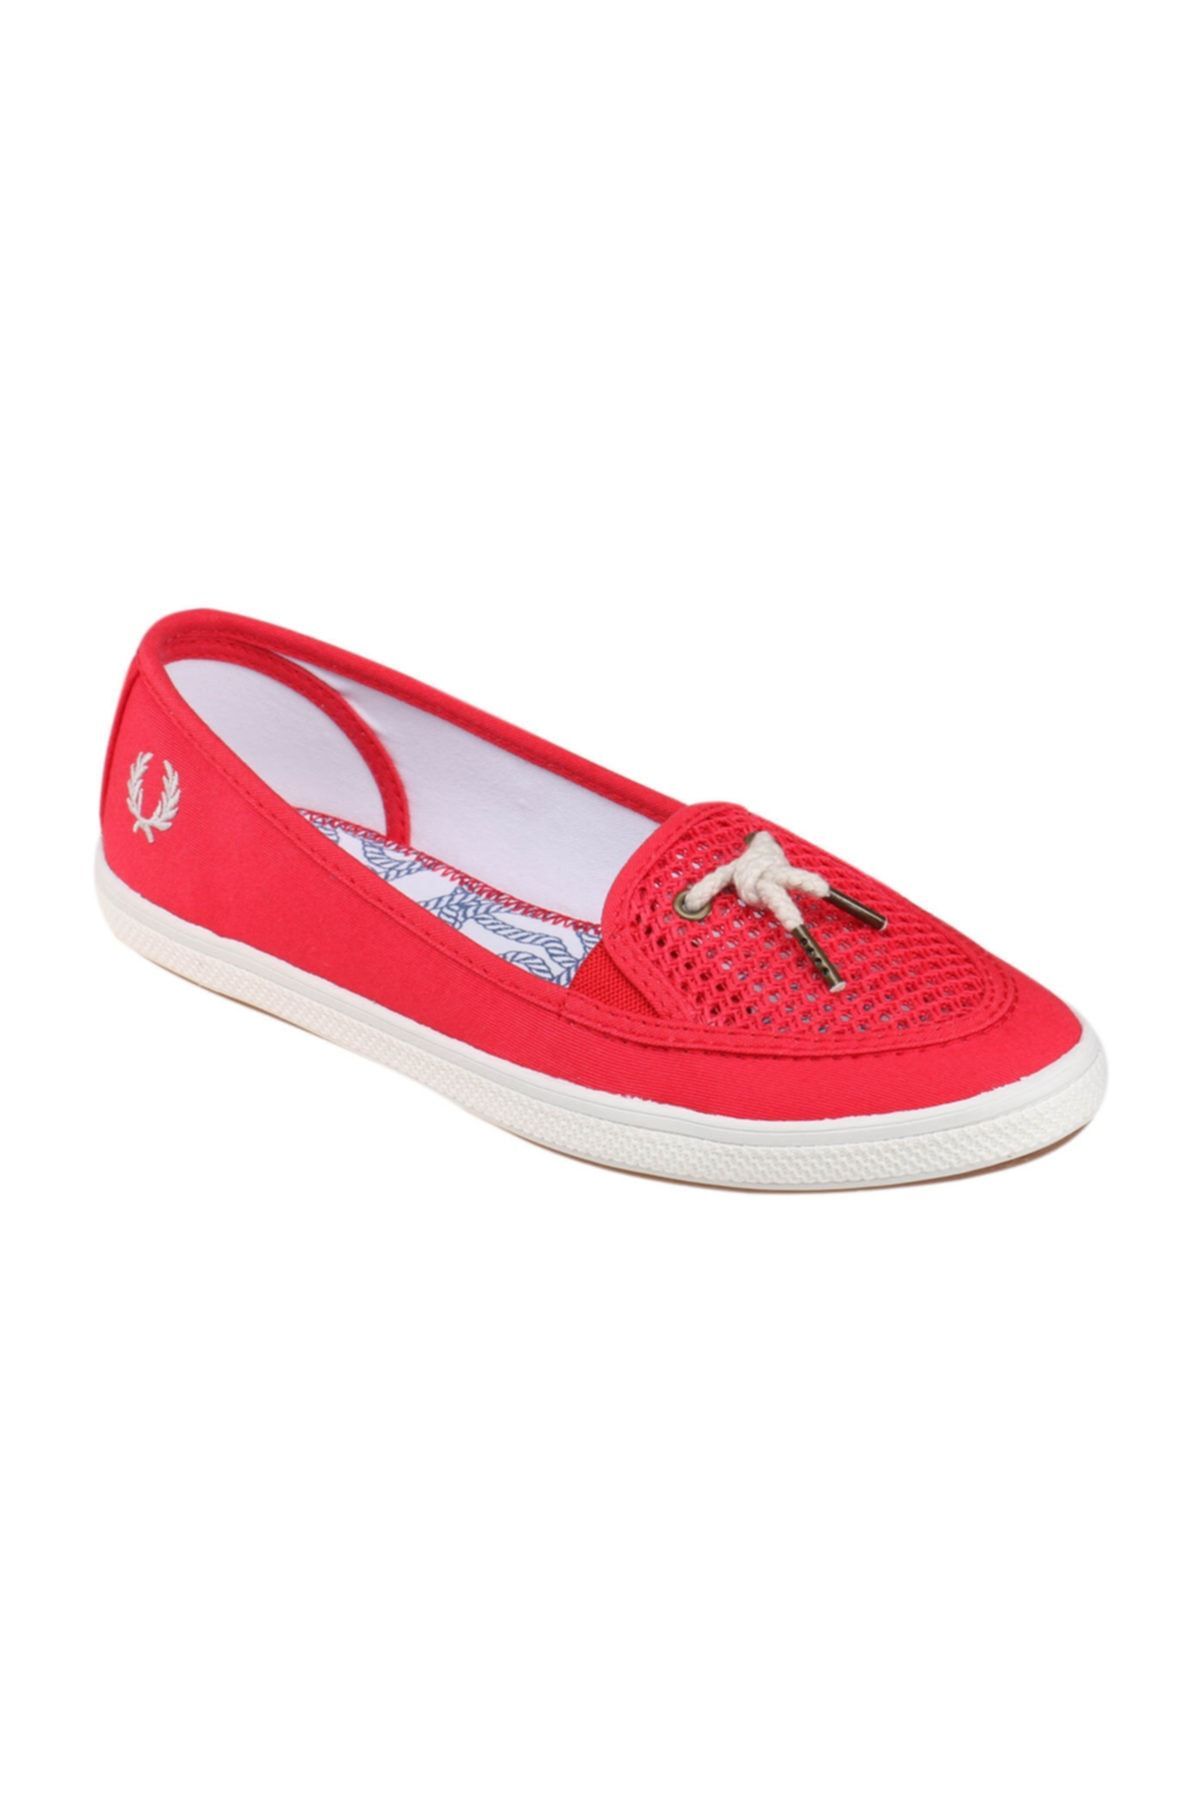 Fred Perry 151 LOTT SLIP ON Kırmızı Kadın Sneaker Ayakkabı 100188552